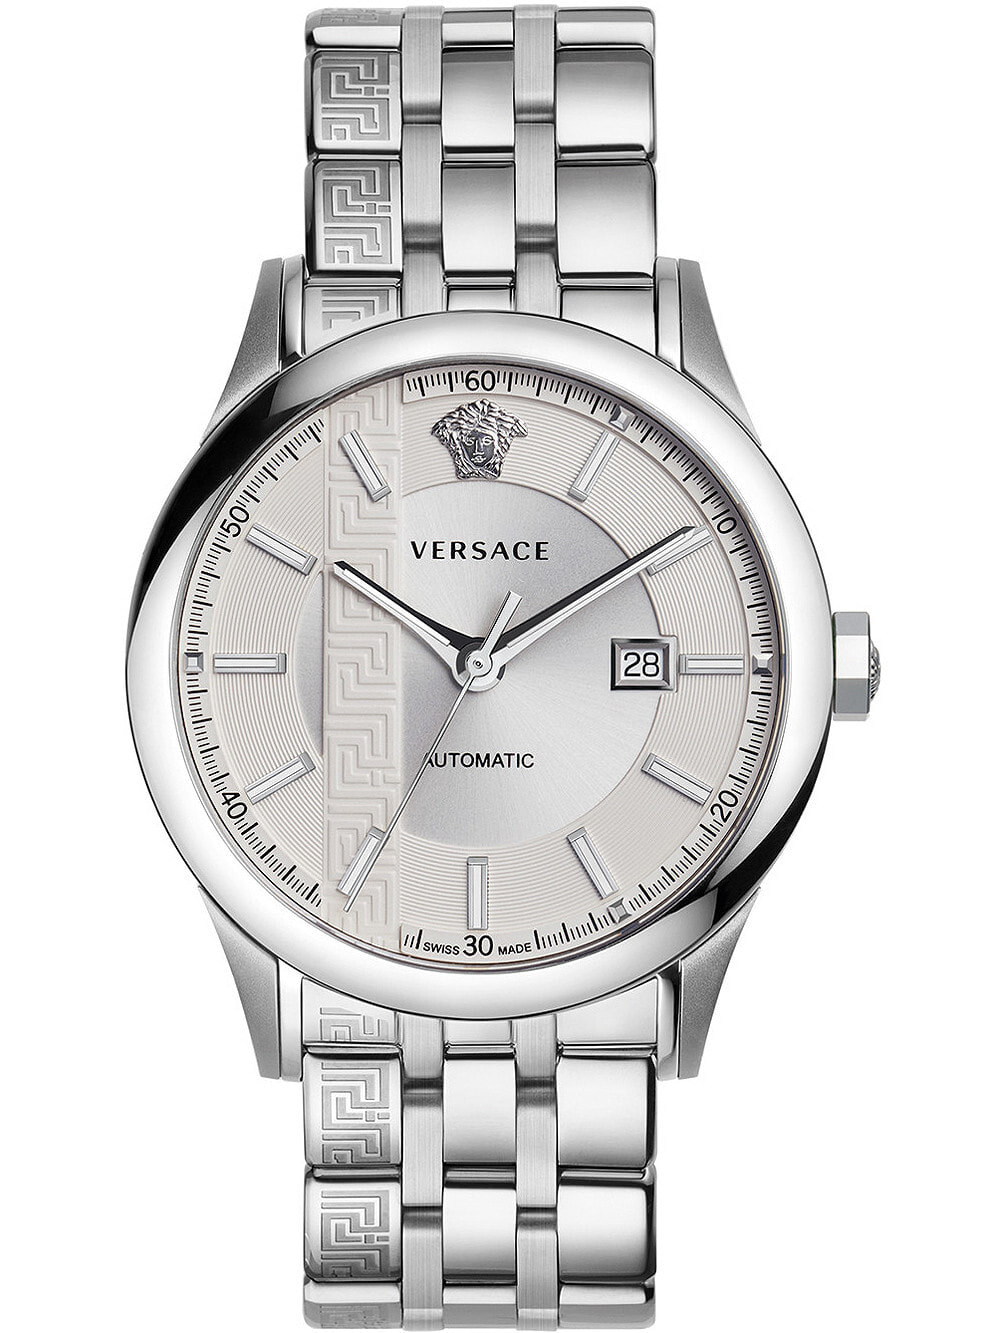 Мужские наручные часы с серебряным браслетом Versace V18040017 Aiakos automatic mens 44mm 5ATM